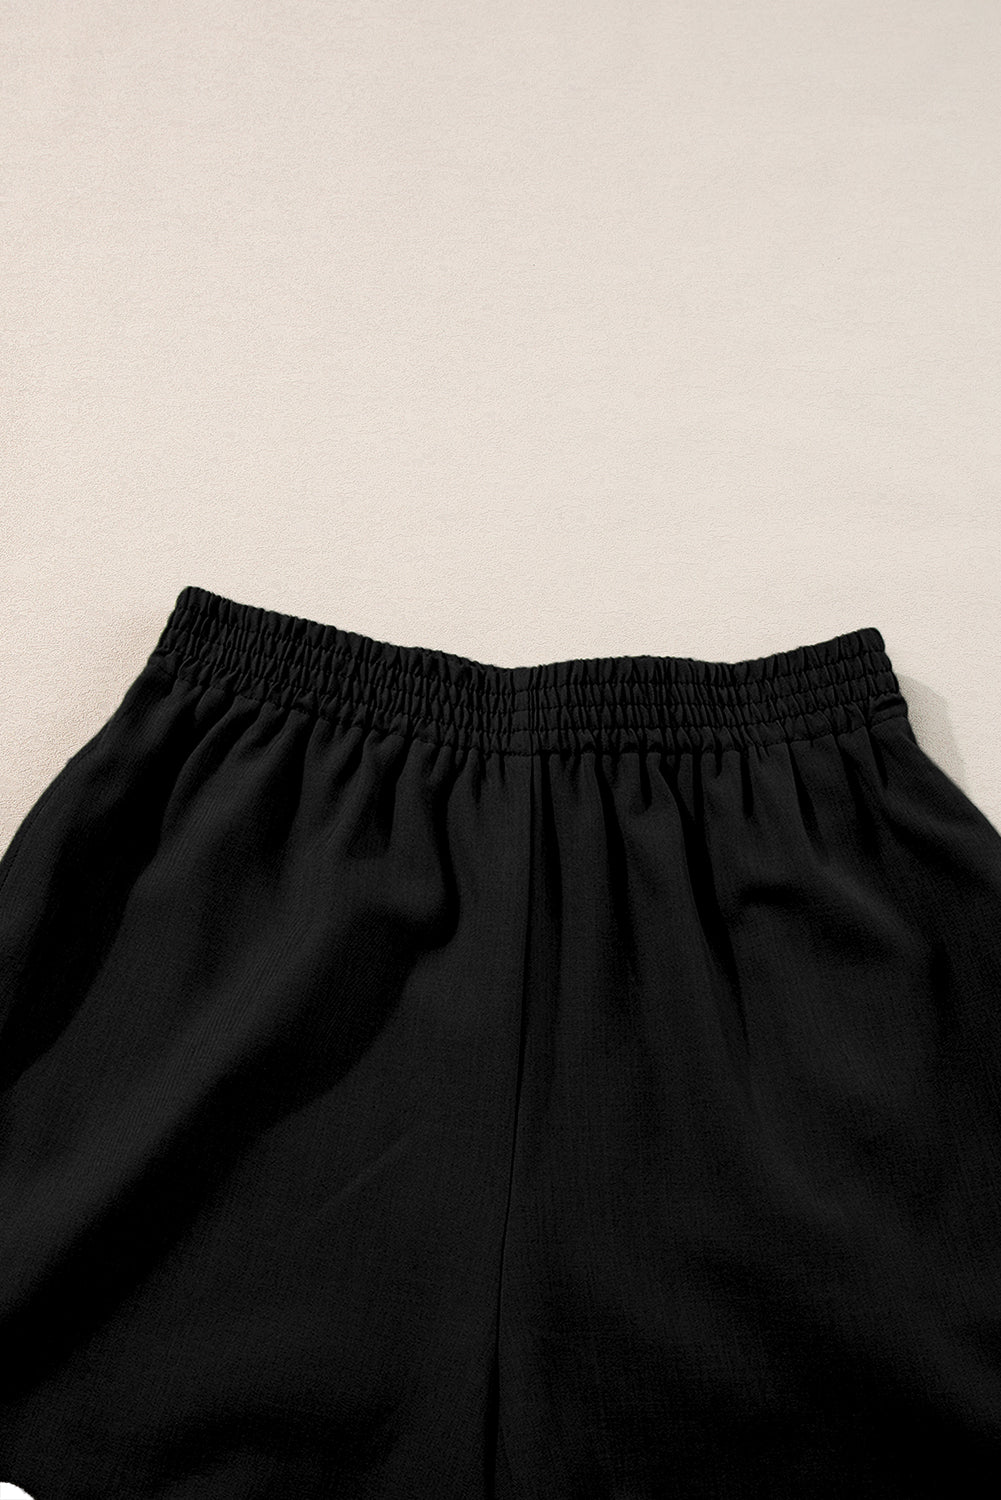 Crni komplet kratkih hlača s elastičnim pojasom Ricrac